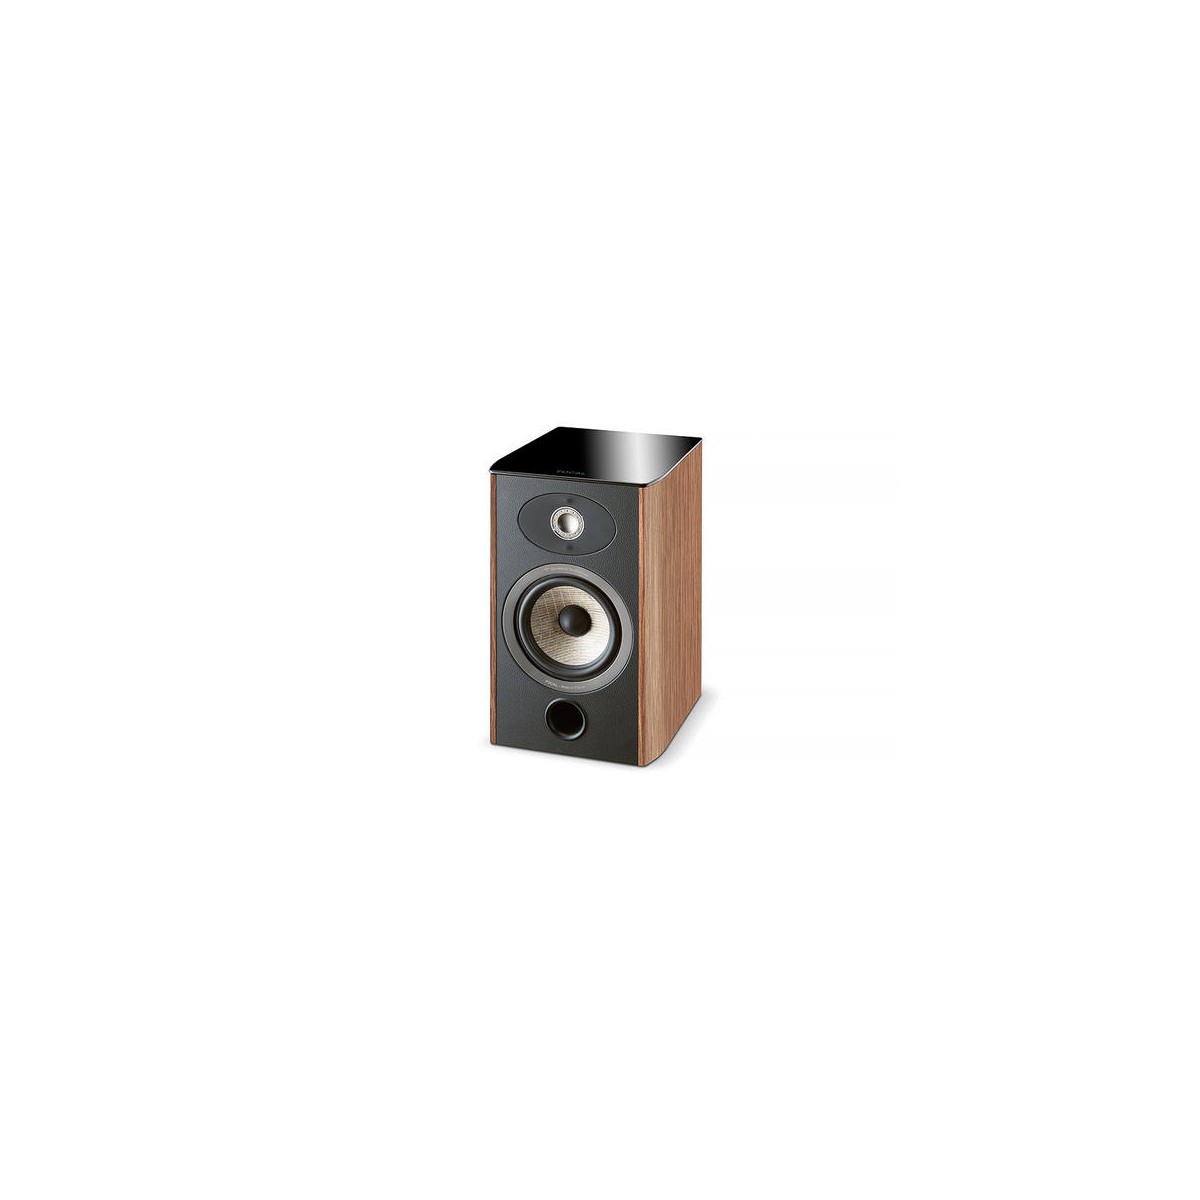 Compact speaker ARIA 906